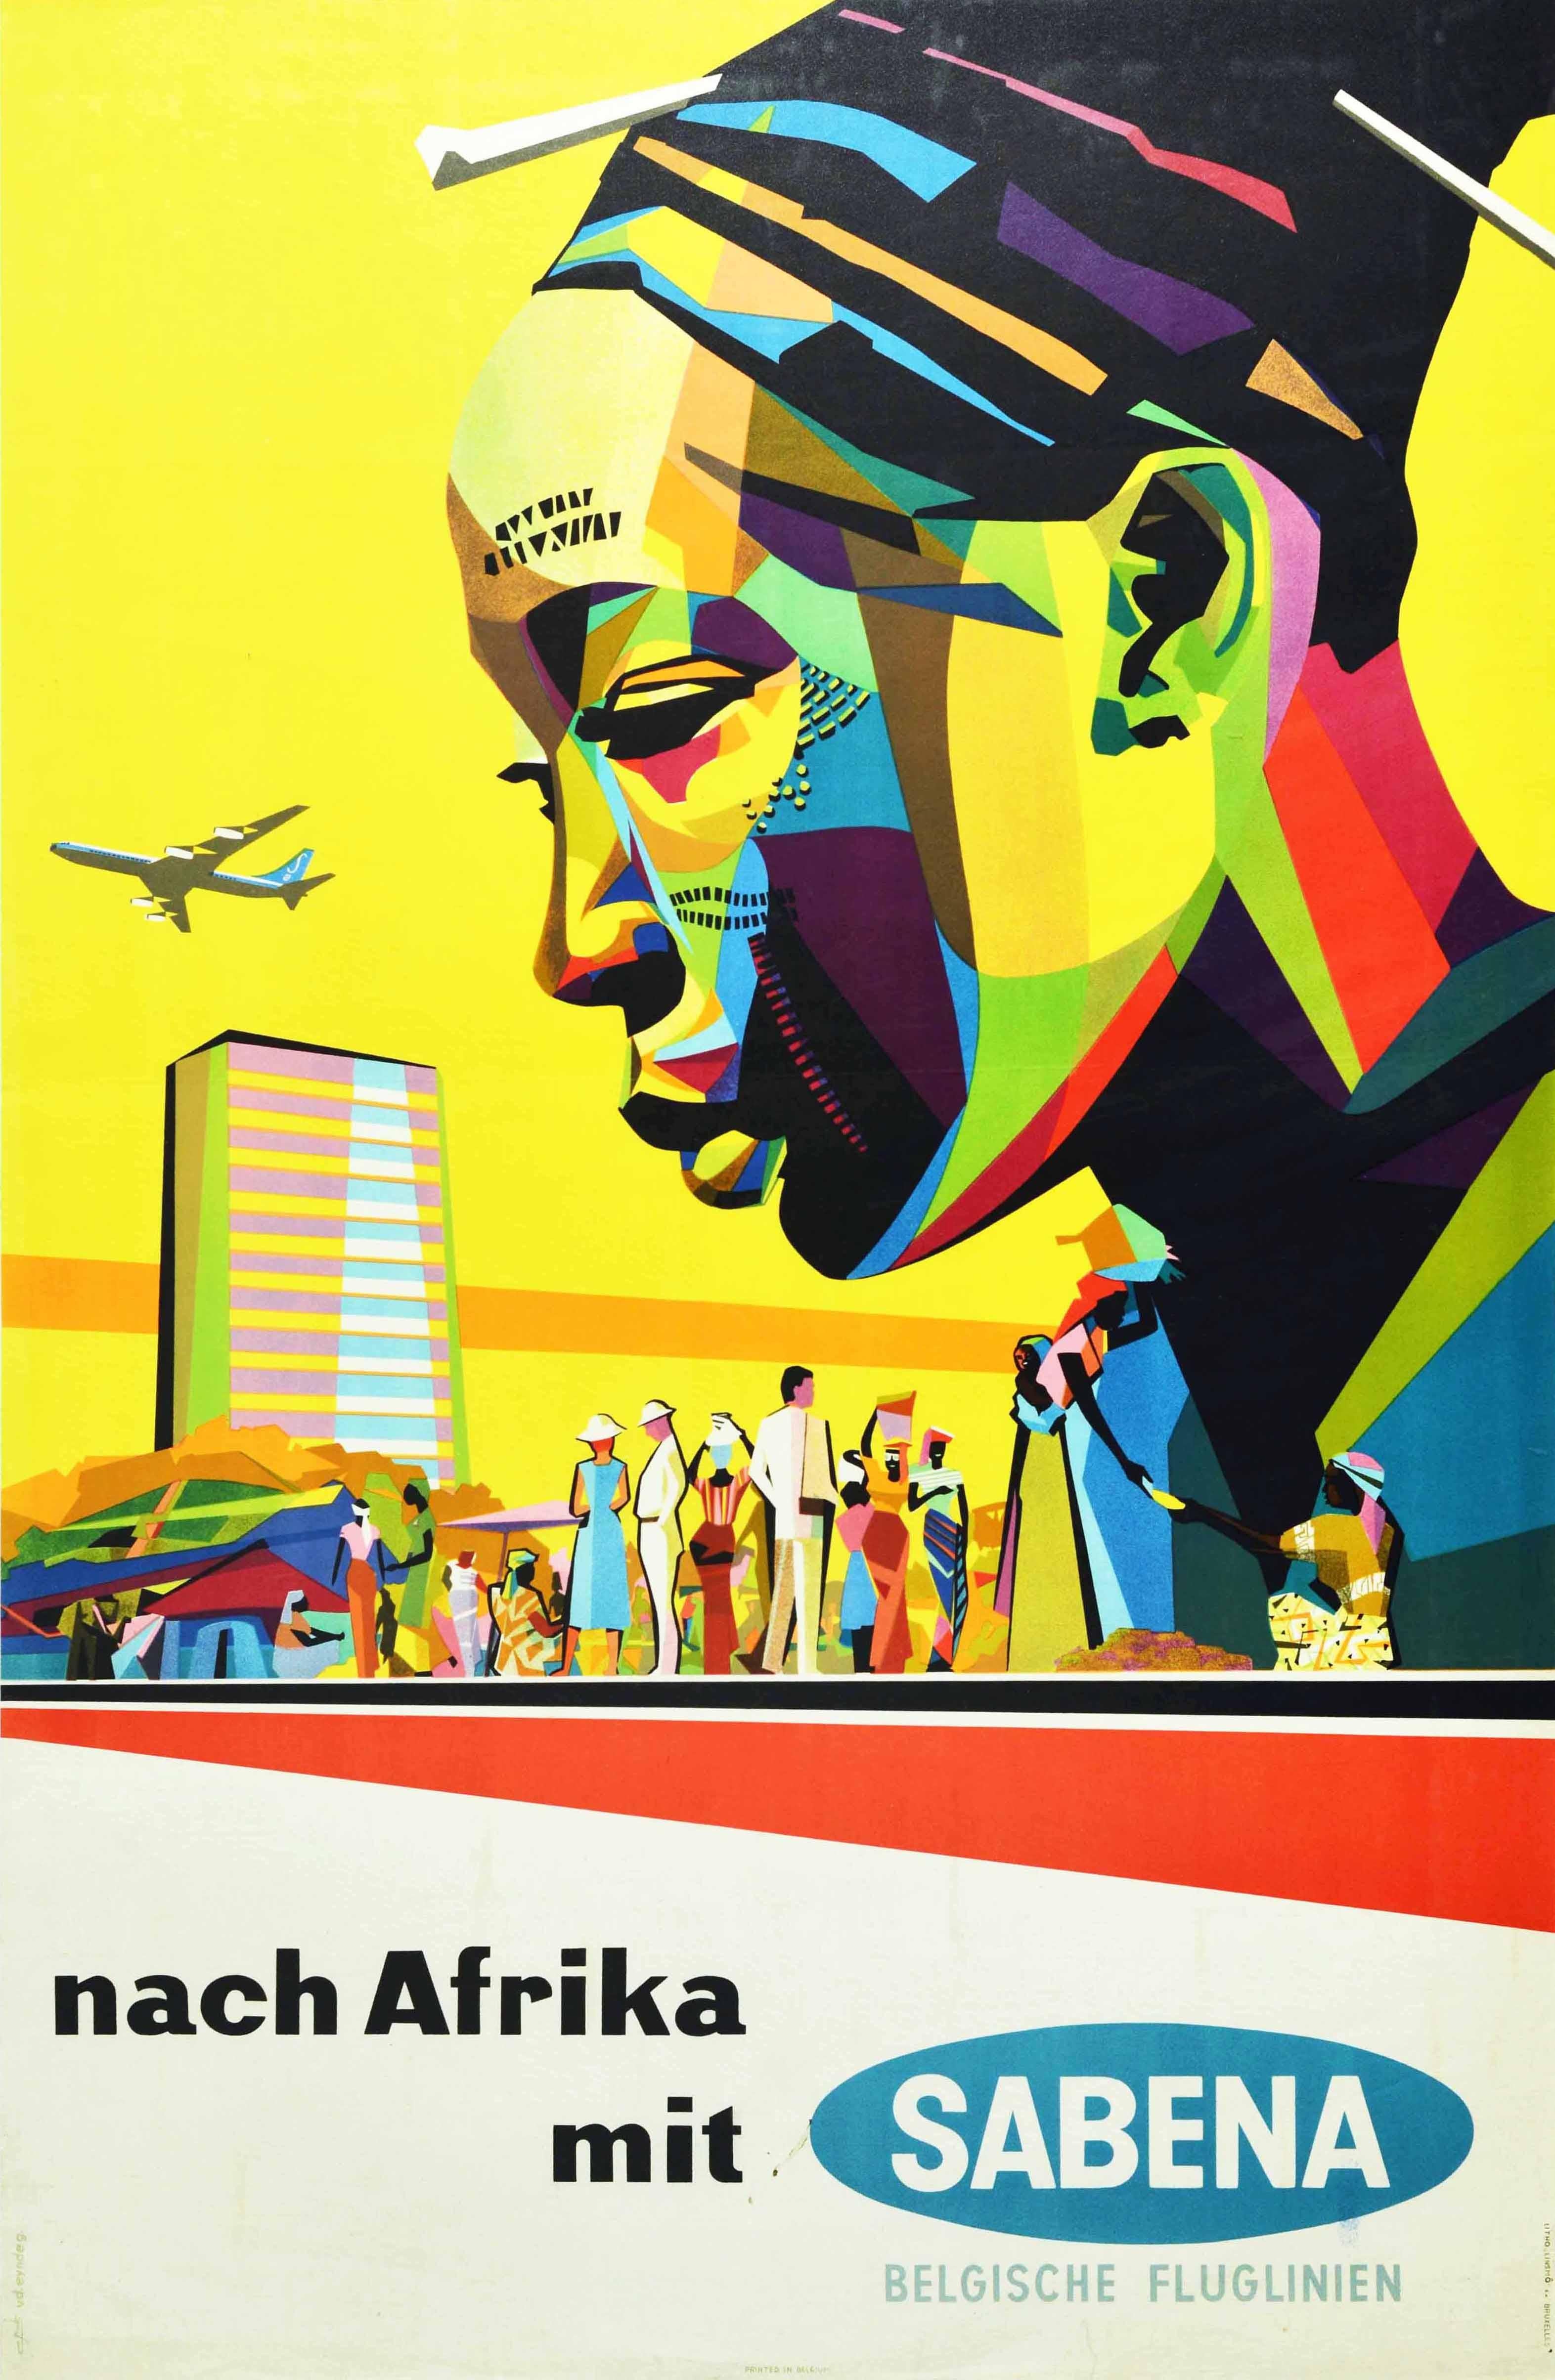 Gaston van den Eynde Print - Original Vintage Travel Poster Africa Sabena Airlines Midcentury Modern Design